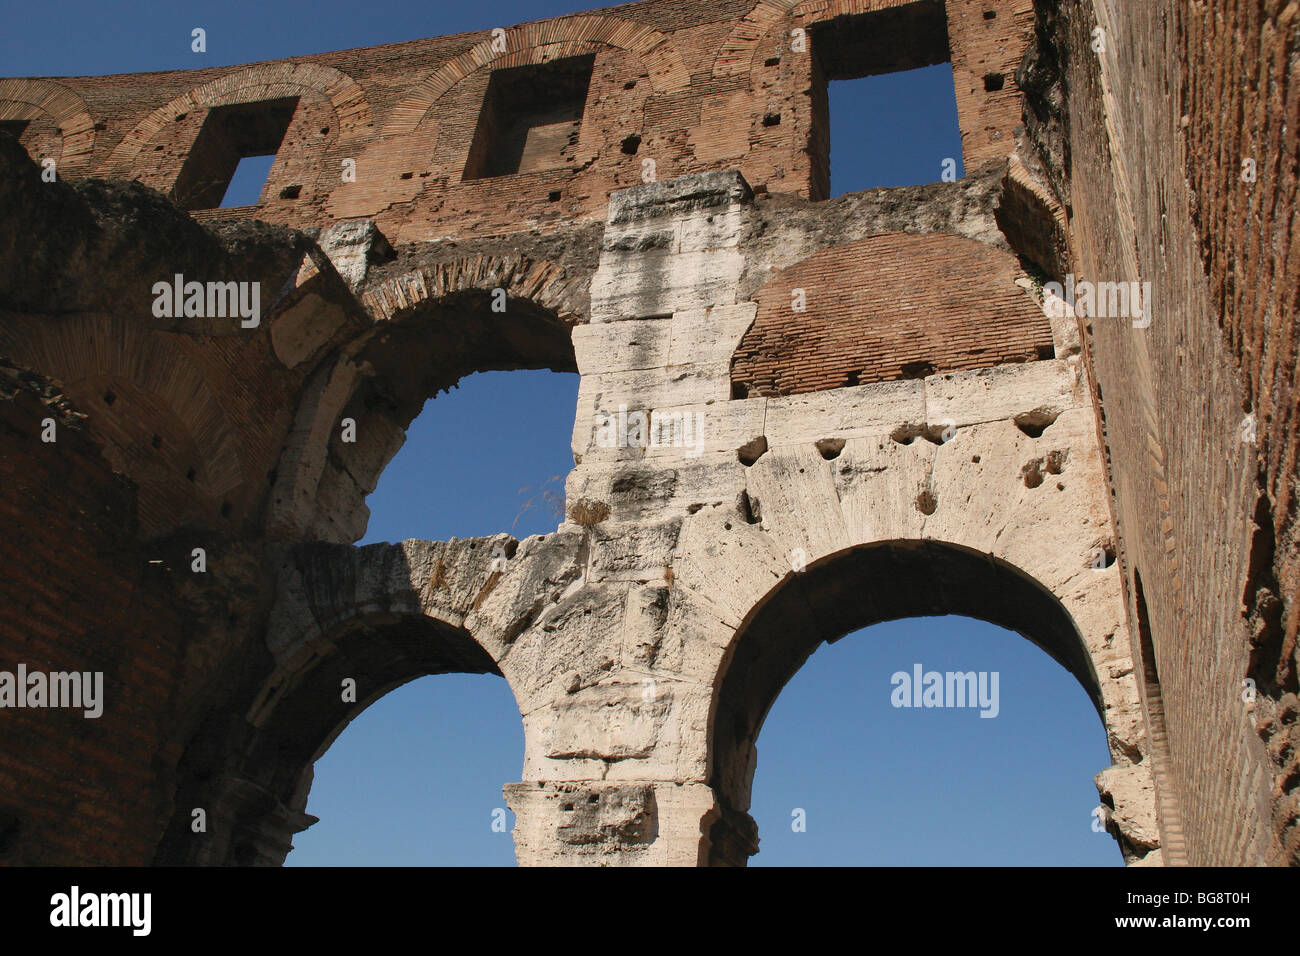 Le Colisée (Coliseum) ou Flavian Amphitheater. Rome. Banque D'Images